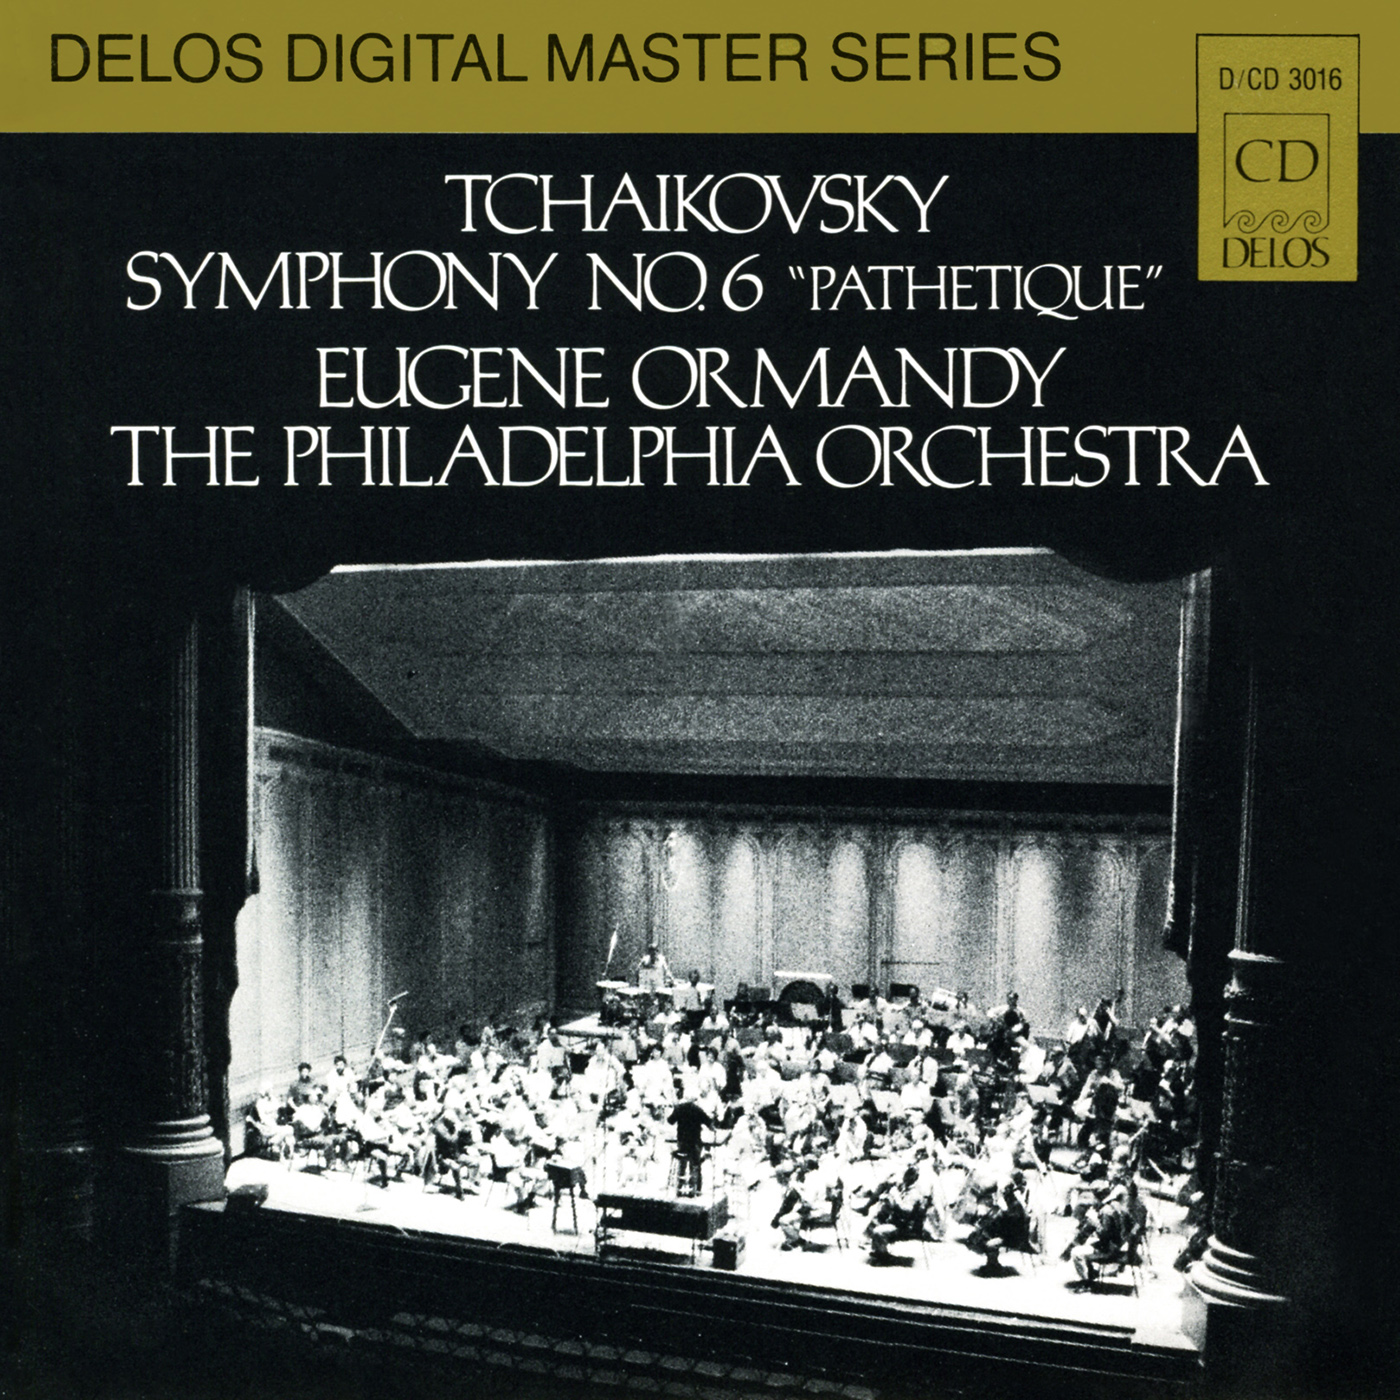 TCHAIKOVSKY, P.I.: Symphony No. 6, "Pathetique" (Philadelphia Orchestra, Ormandy)